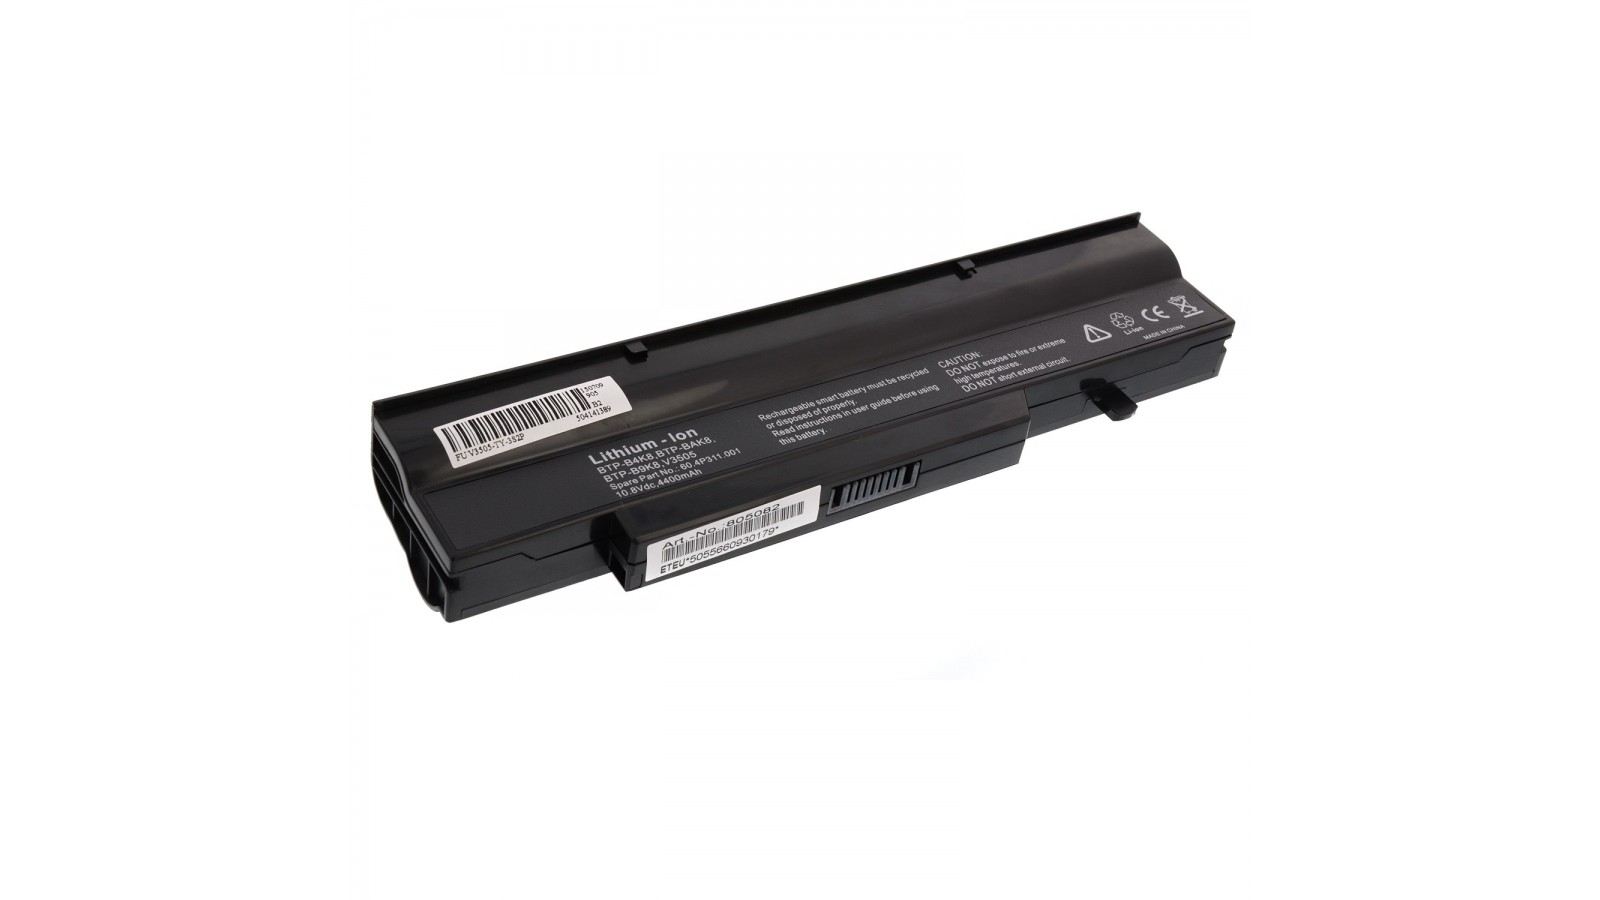 Batteria compatibile con Fujitsu Exprimo Mobile V5505 V5545 V6505 V6535 V6545